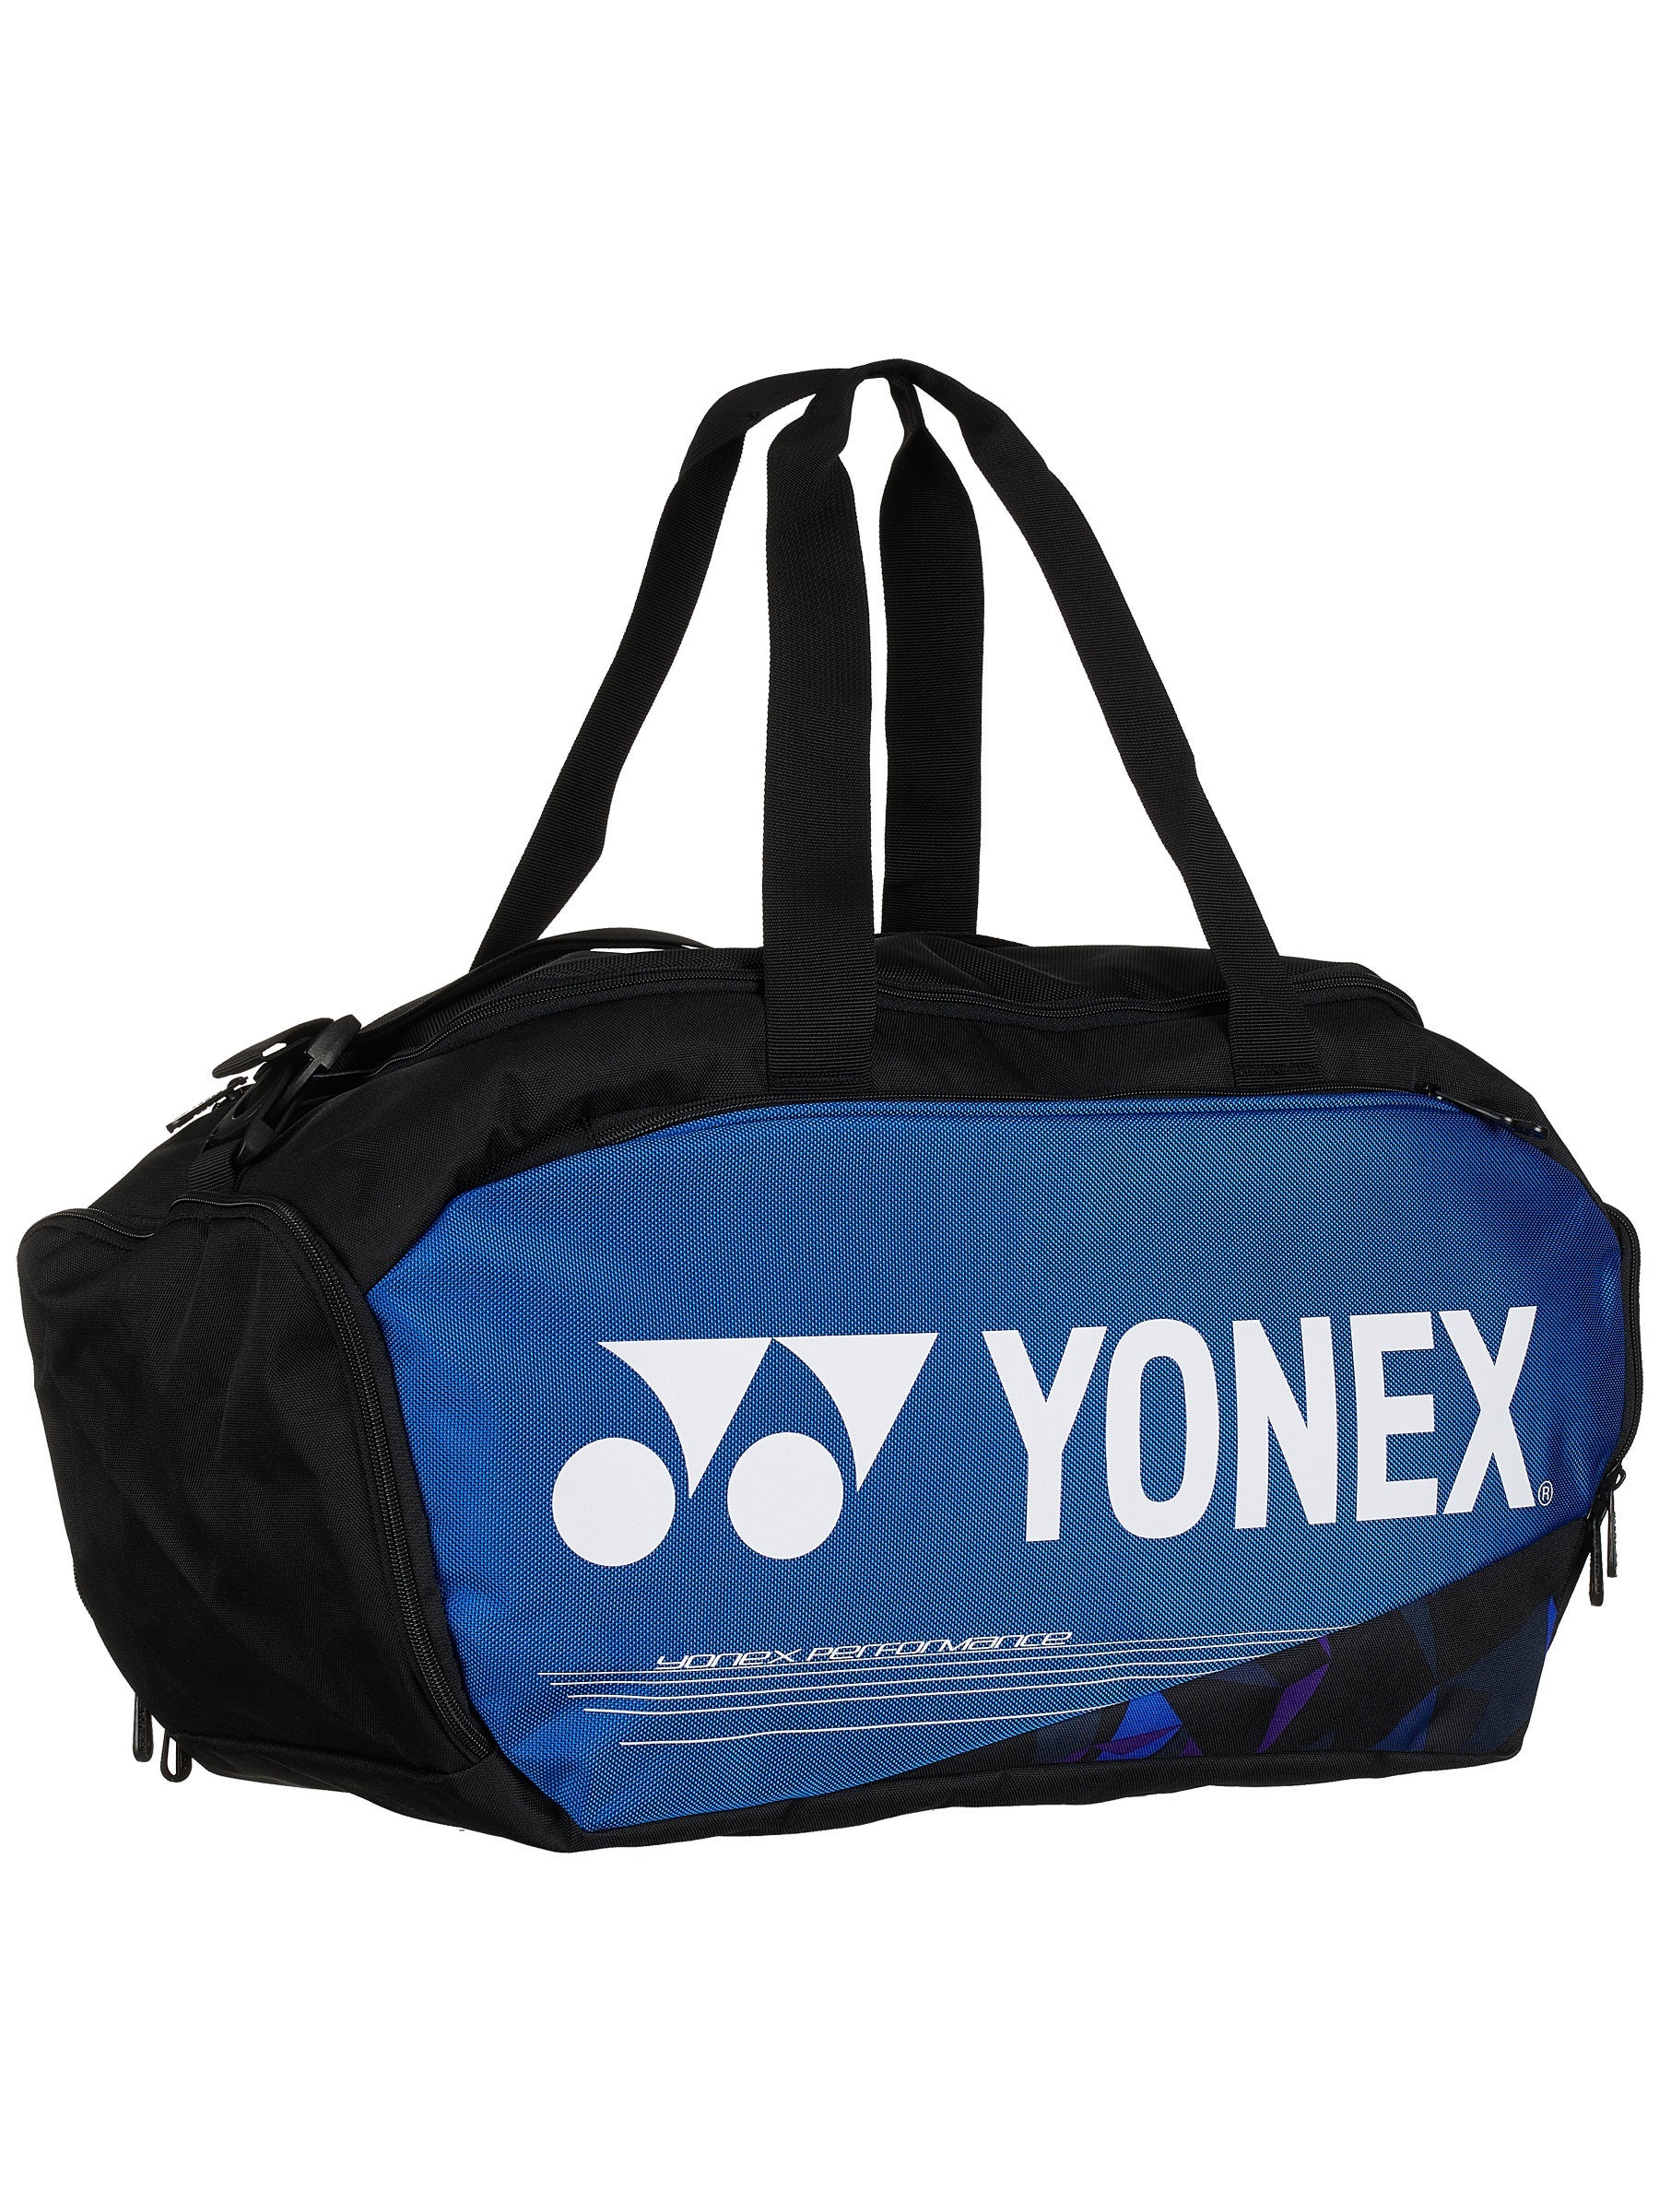 Details about   YONEX  Travel Pouch Large Bag1996LEX Size 34 x 24 x 9 cm Navy Blue 100% Nylon 